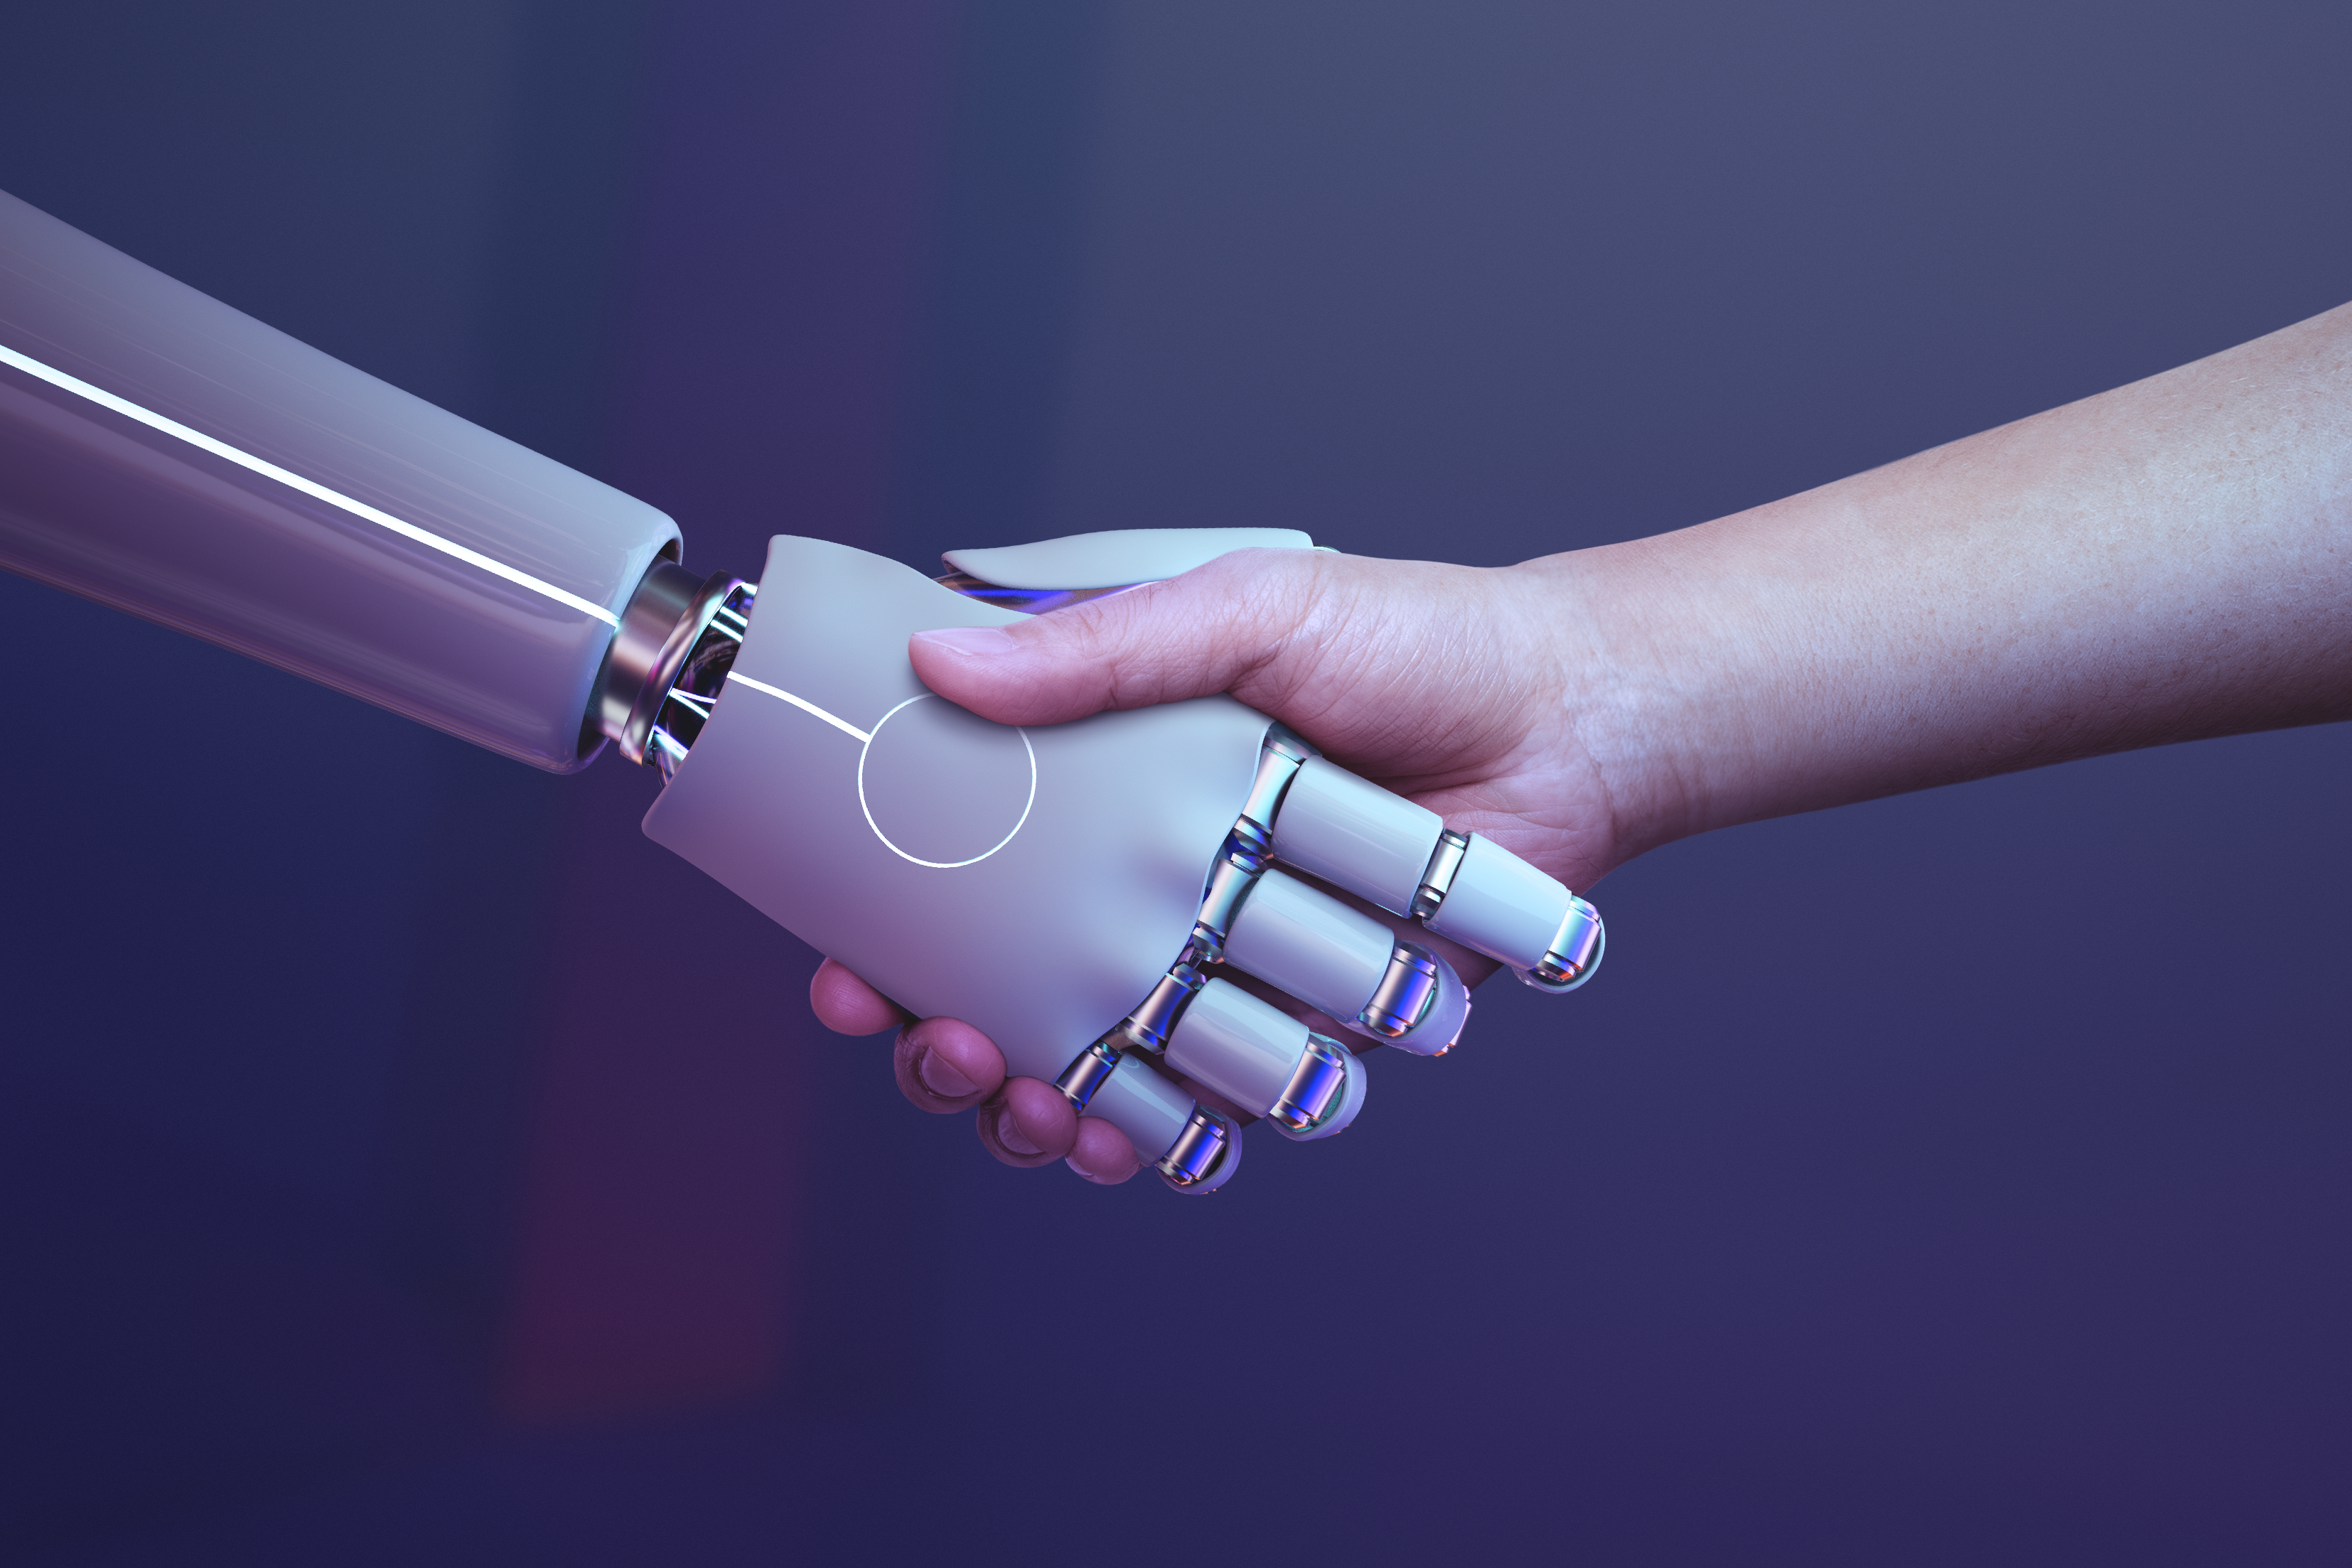 Poignée de mains entre un robot et un humain